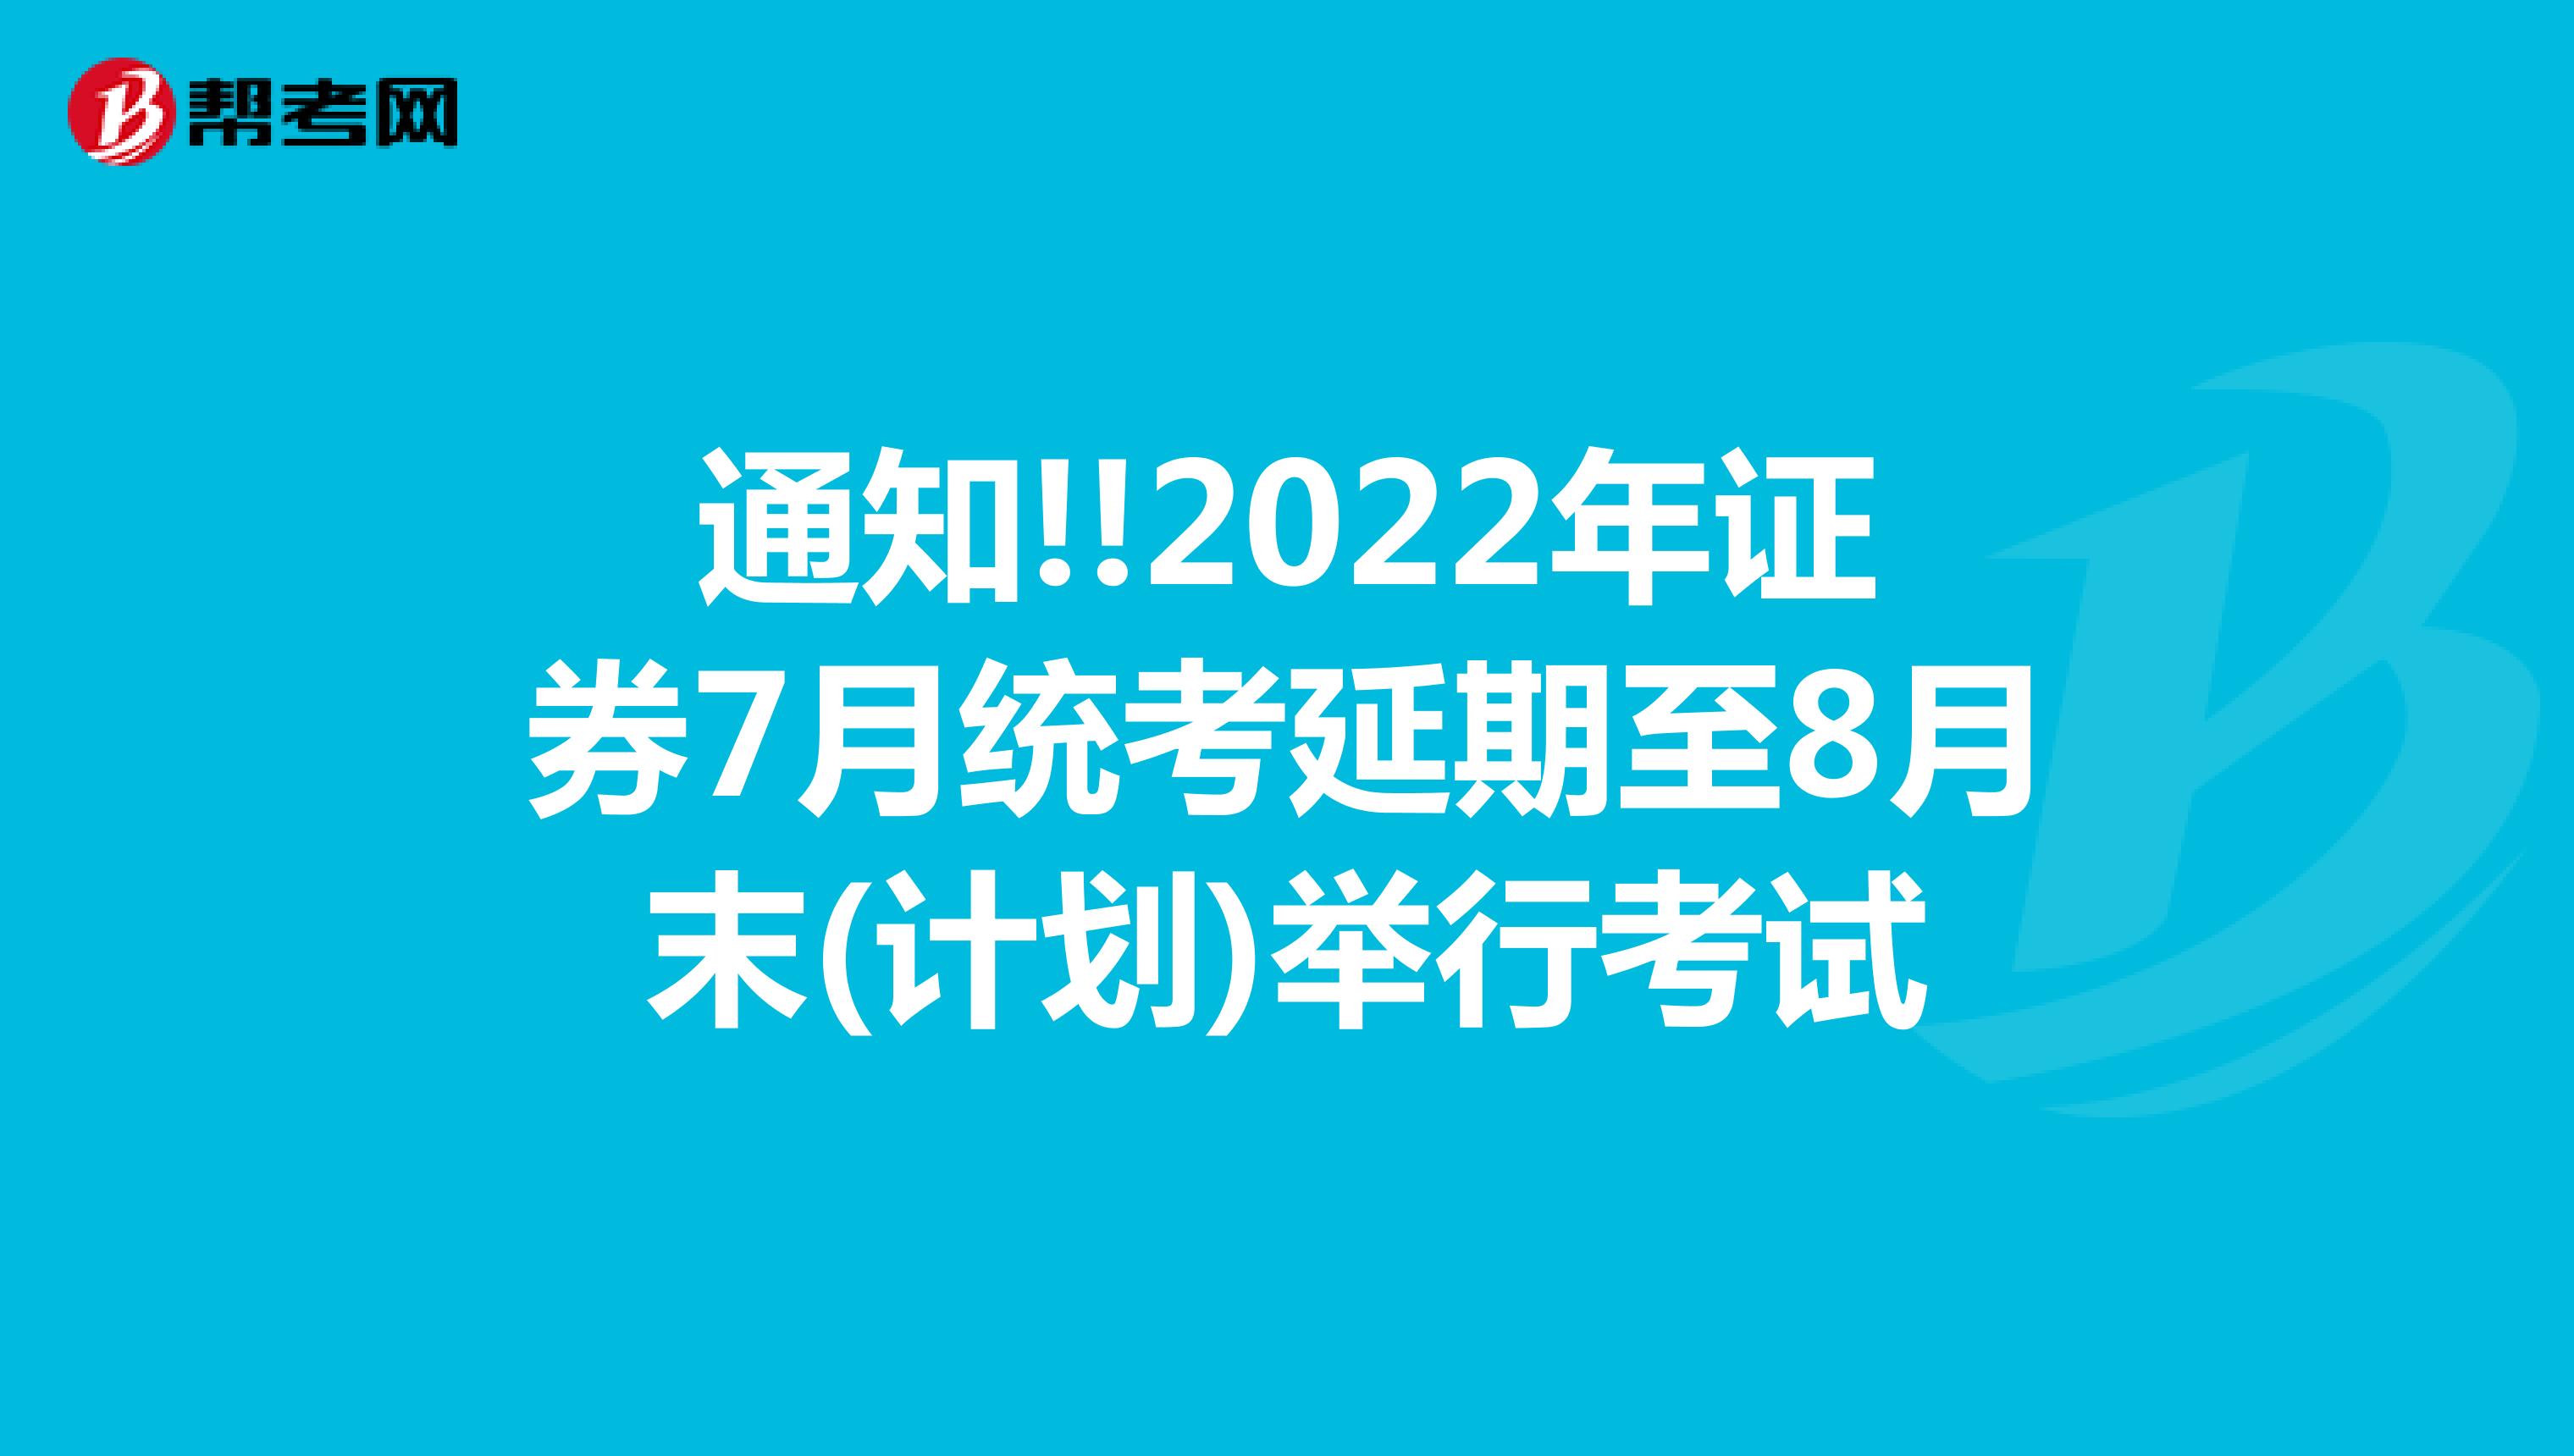 通知!!2022年证券7月统考延期至8月末(计划)举行考试